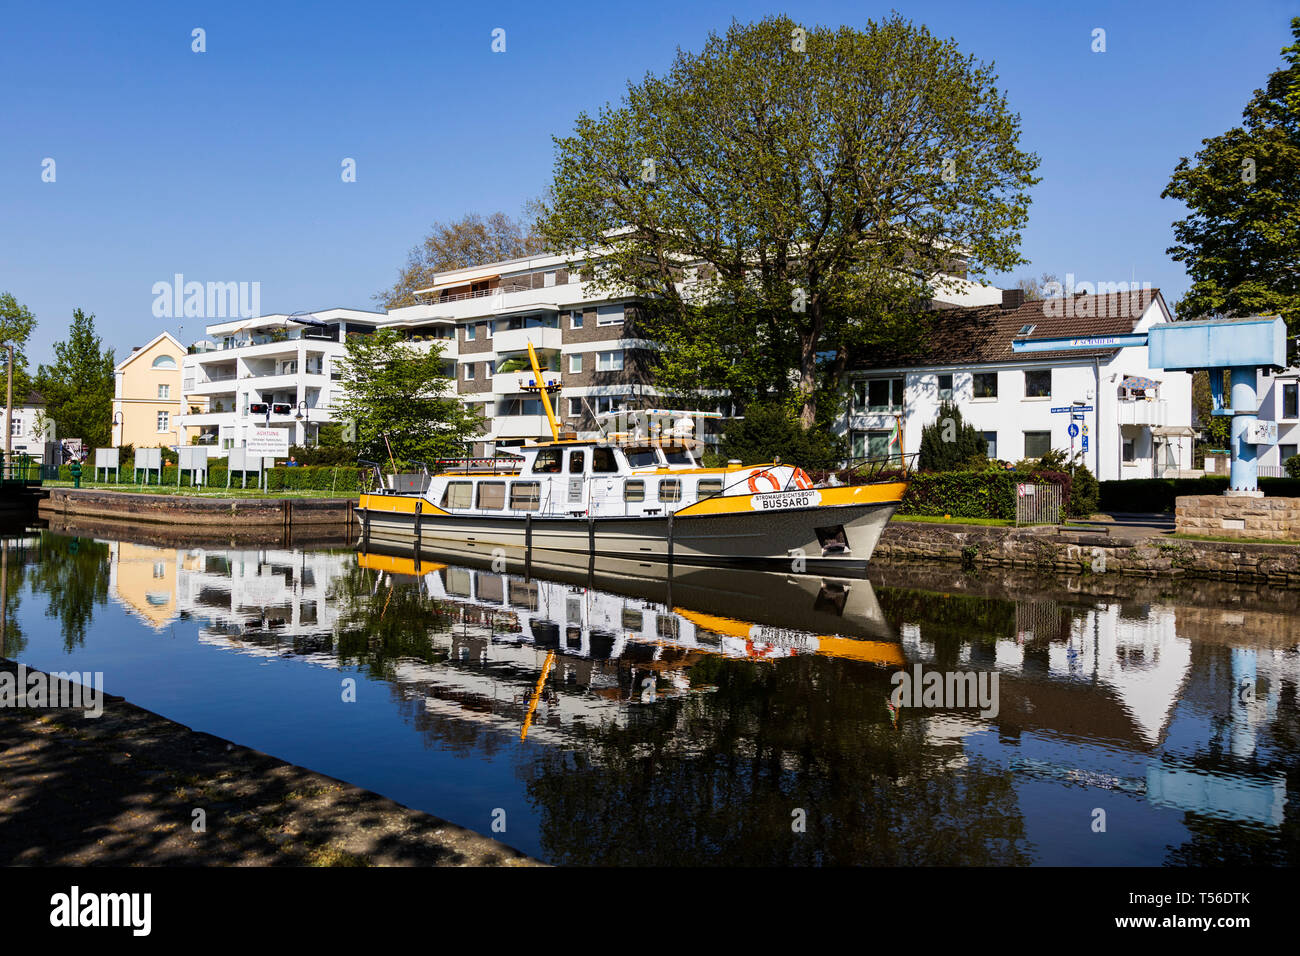 Controllo del fiume in barca fluviale, agenzia, fiume Ruhr, Mülheim an der Ruhr, Germania Foto Stock